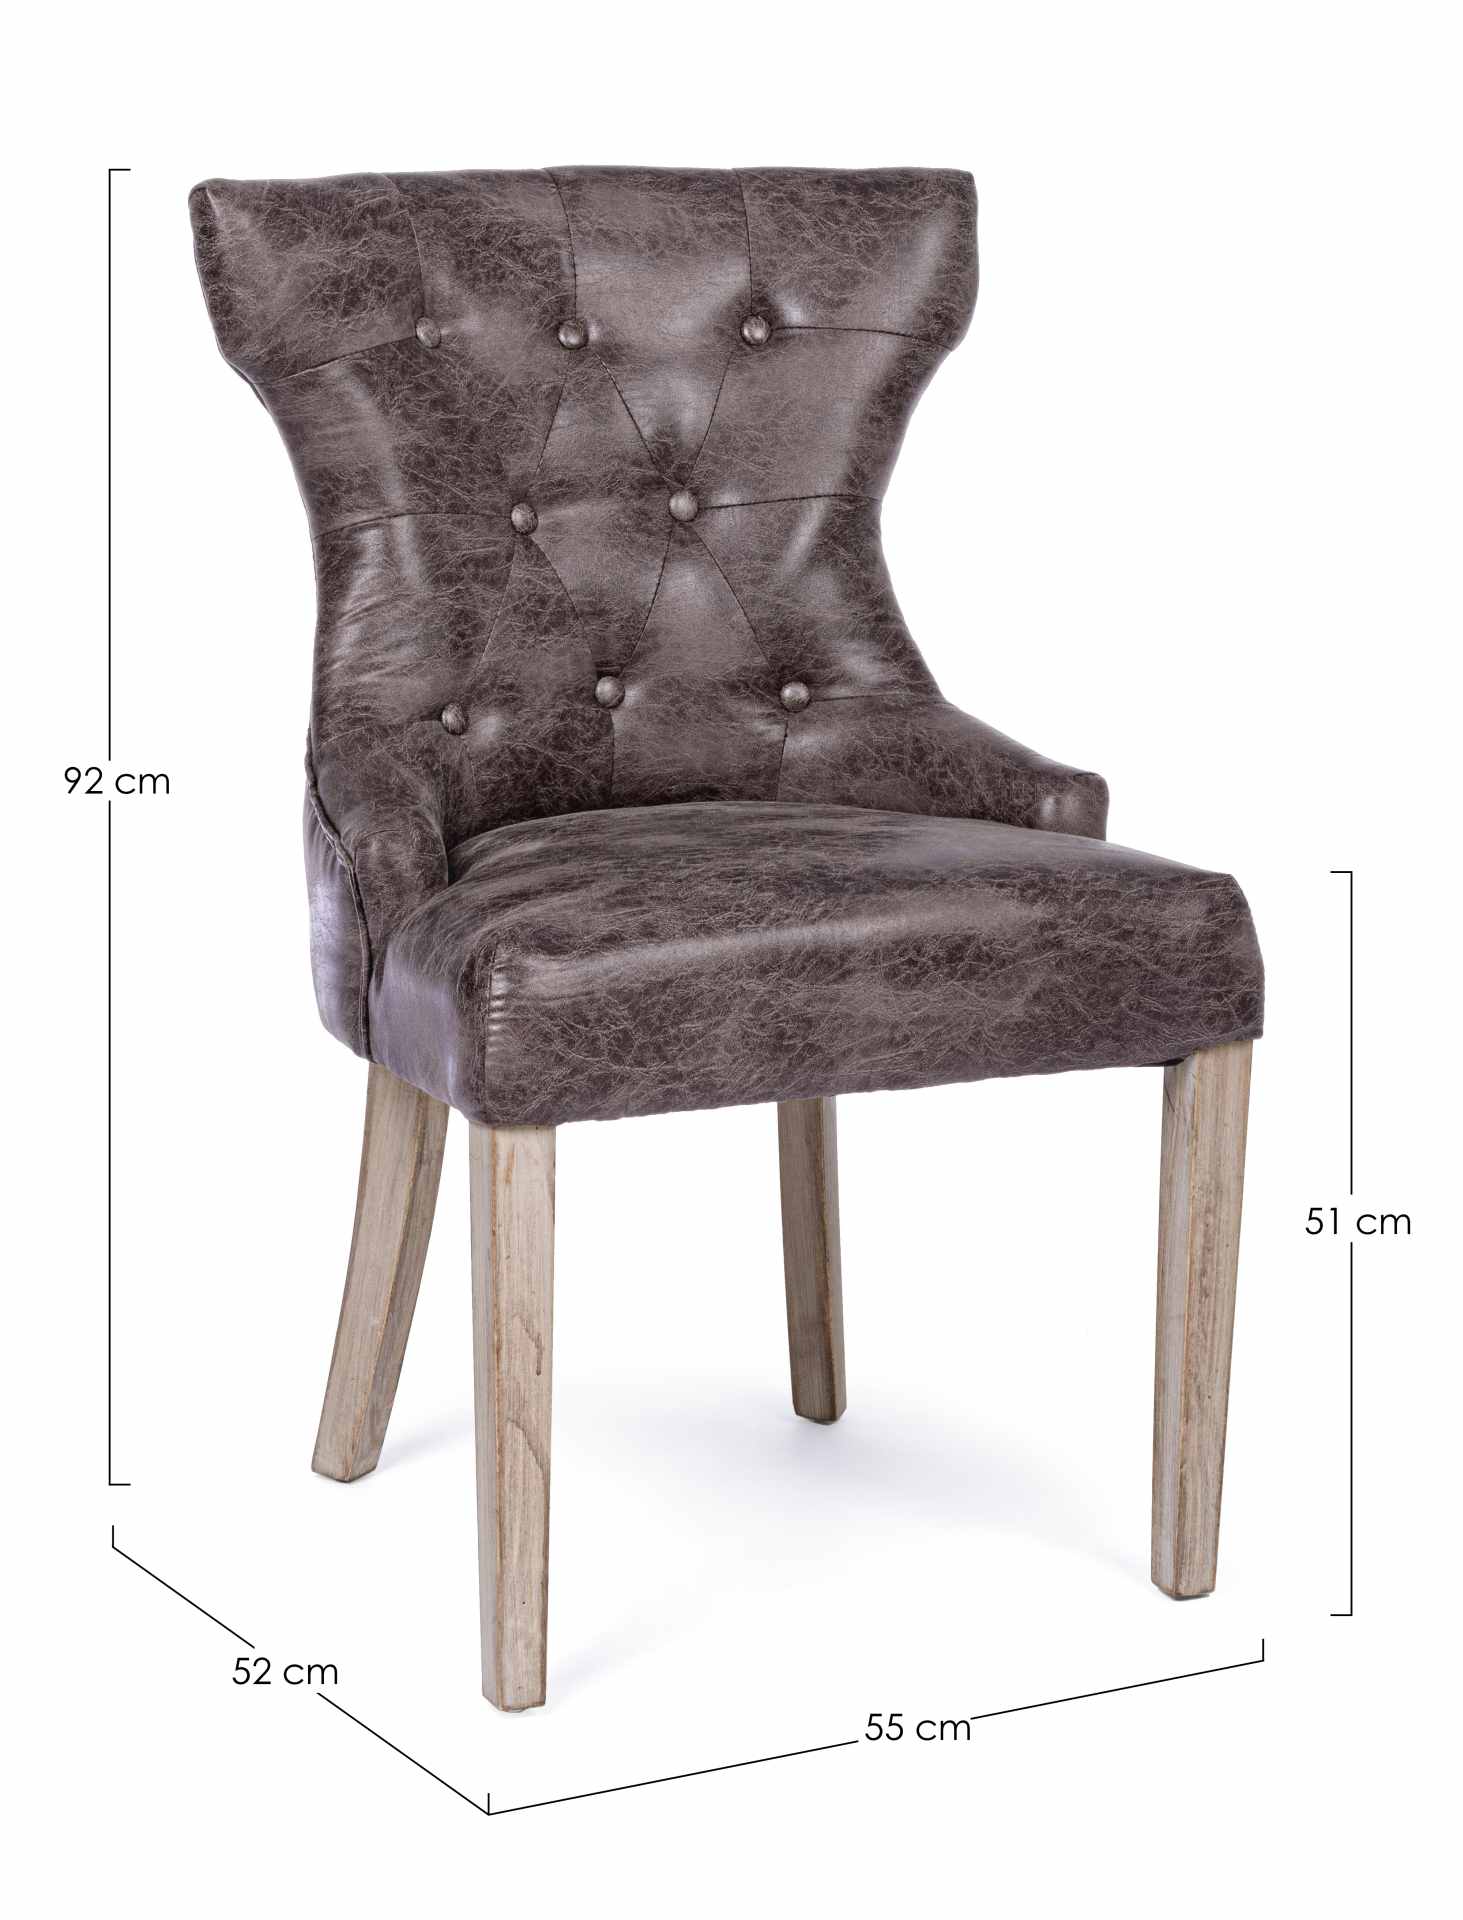 Der Esszimmerstuhl Azelia überzeugt mit seinem klassischem Design. Gefertigt wurde der Stuhl aus einem Kunststoff-Bezug, welcher einen braunen Farbton besitzt. Das Gestell ist aus Holz und ist natürlich gehalten. Die Sitzhöhe beträgt 51 cm.